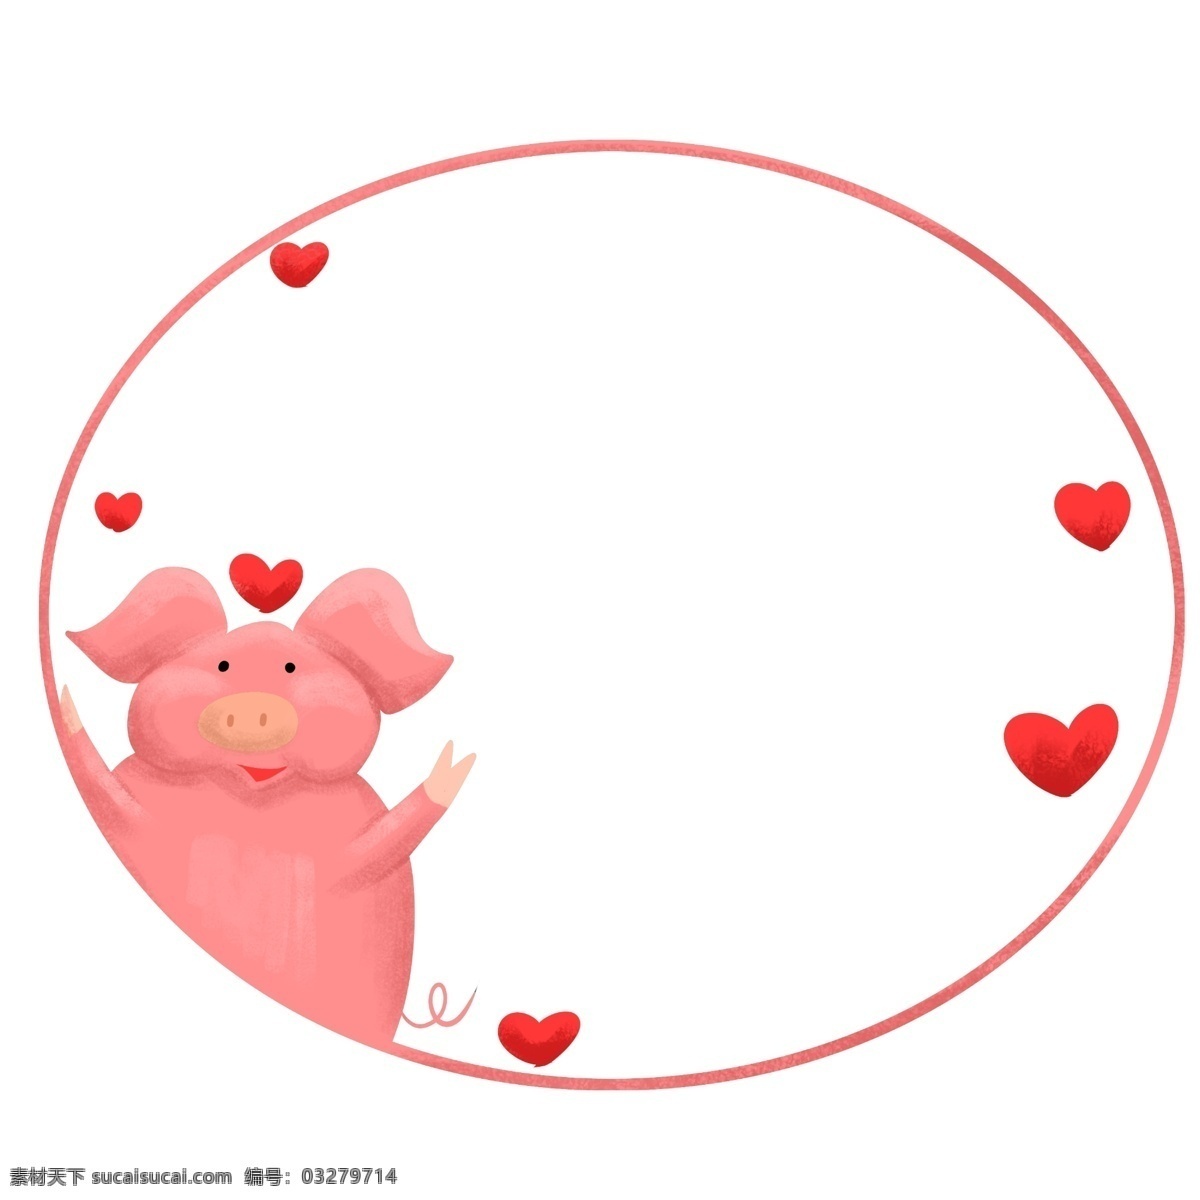 粉色 大象 圆形 边框 红心